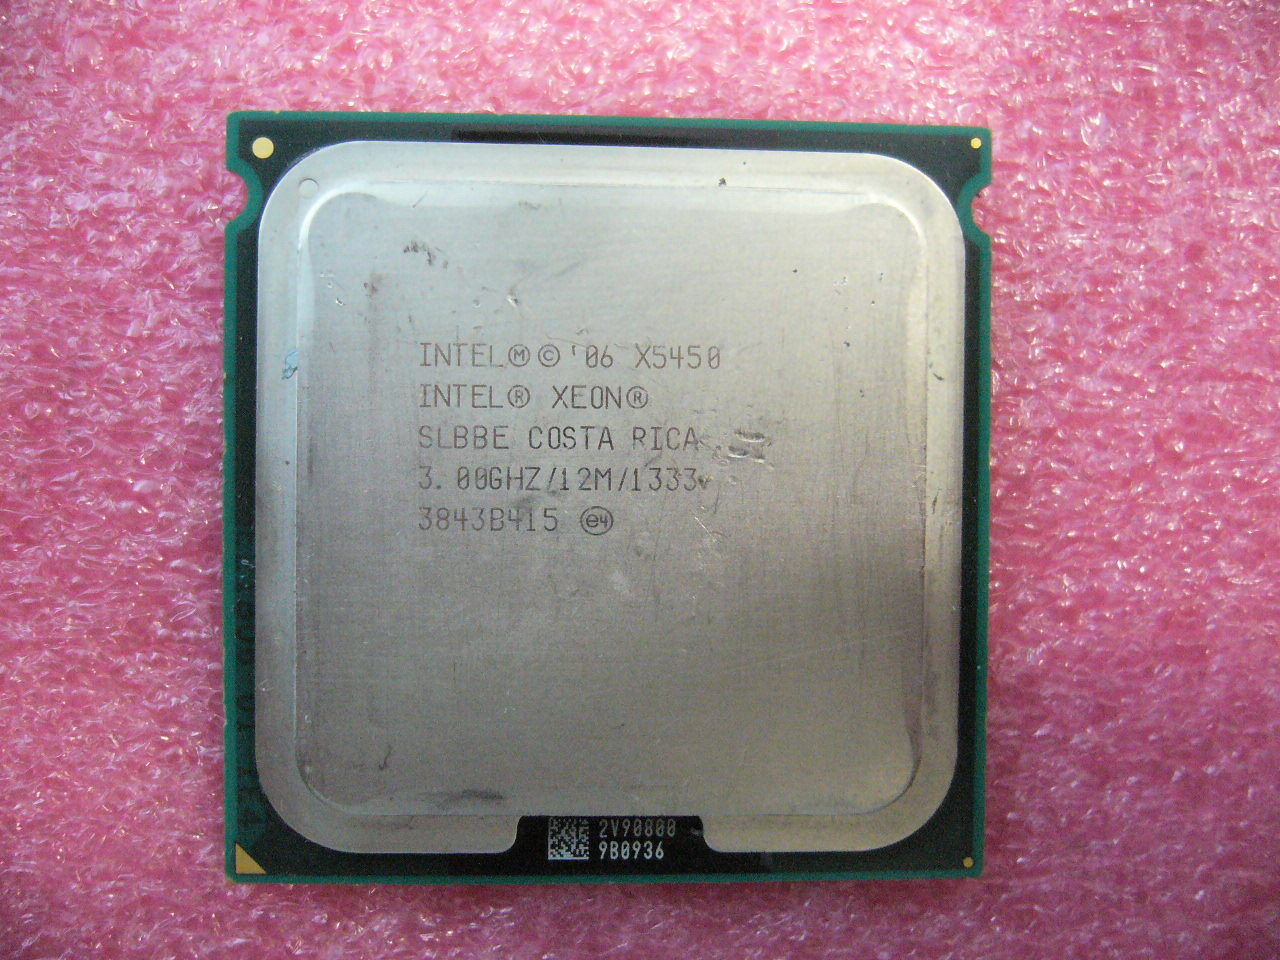 QTY 1x Intel Xeon CPU Quad Core X5450 3.00Ghz/12MB/1333Mhz LGA771 SLBBE